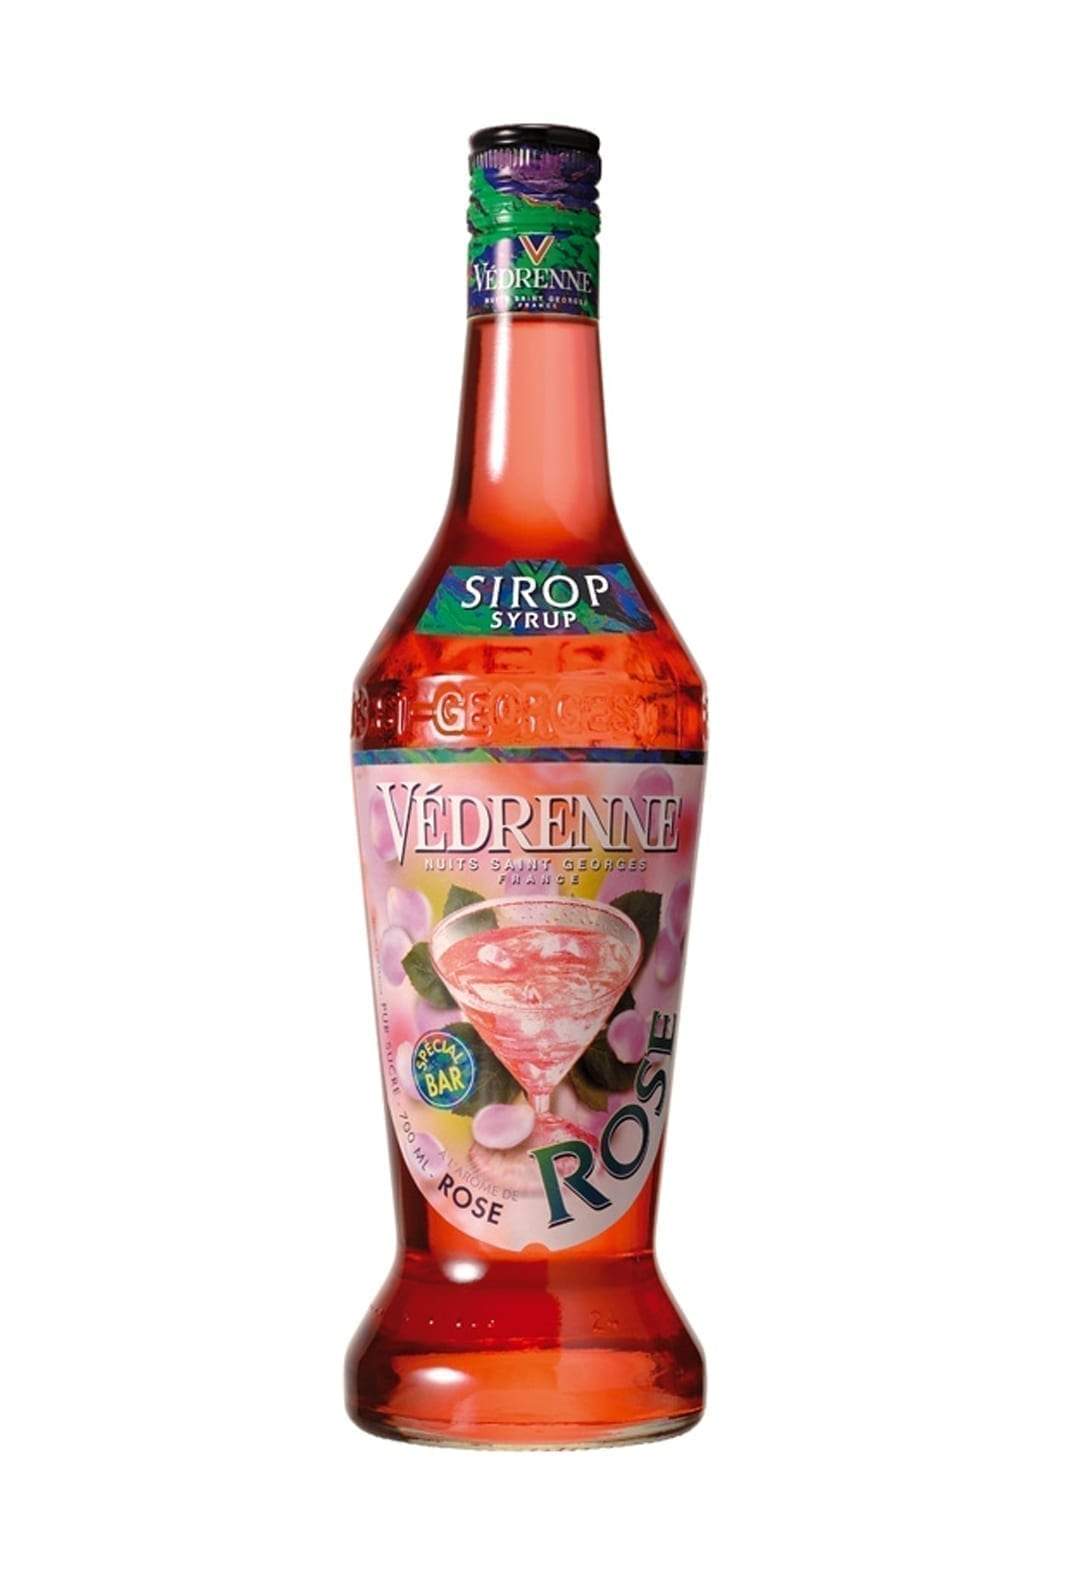 Vedrenne Sirop de Rose (Rose cordial) 1000ml | Syrup | Shop online at Spirits of France